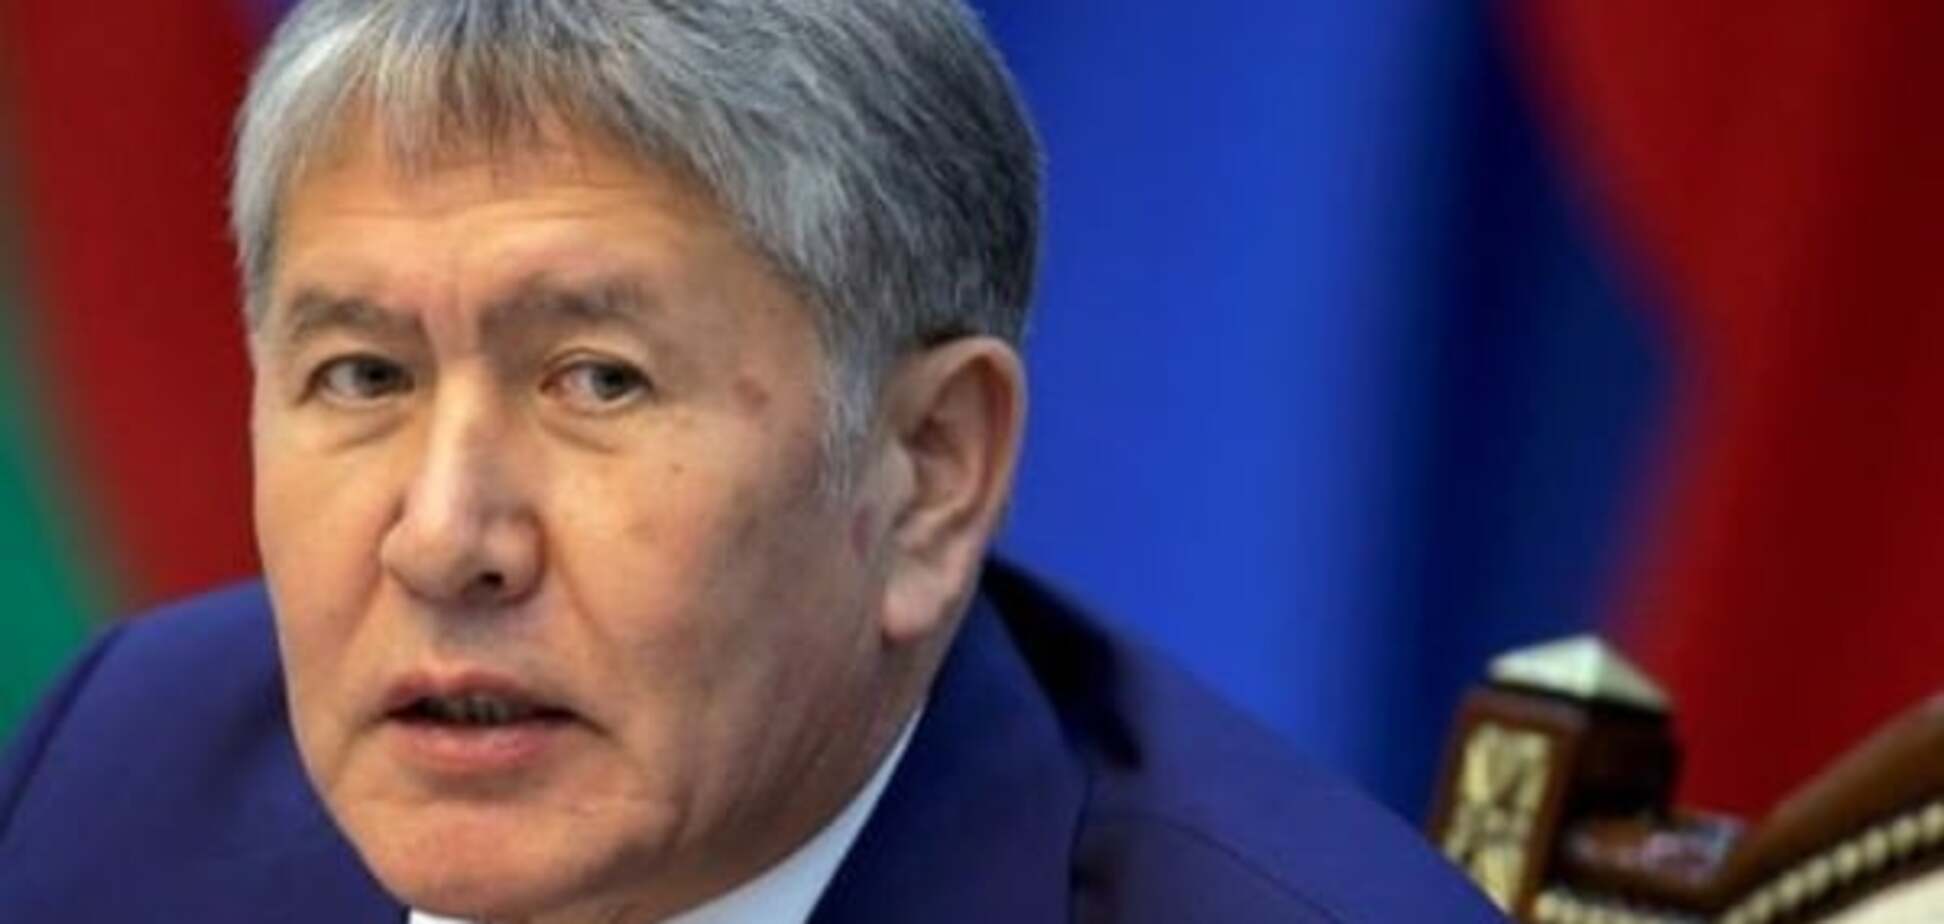 Необхідна термінова госпіталізація: у глави Киргизстану виявили проблеми із серцем